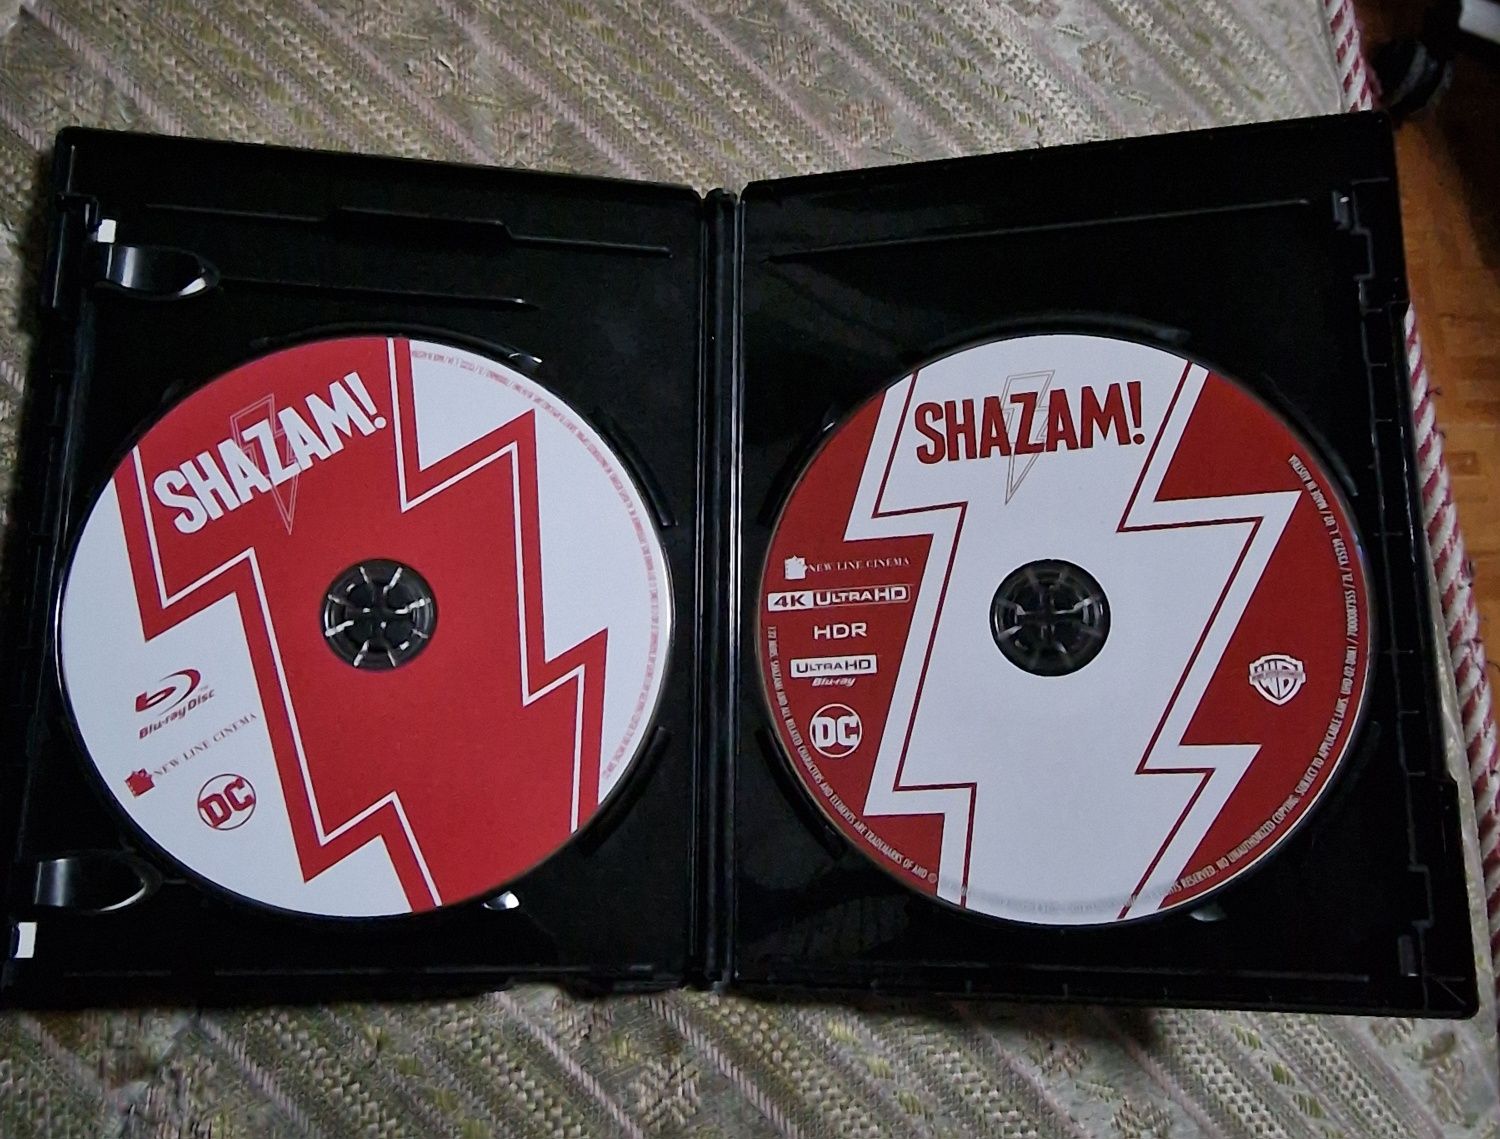 Shazam 4k Blu-Ray